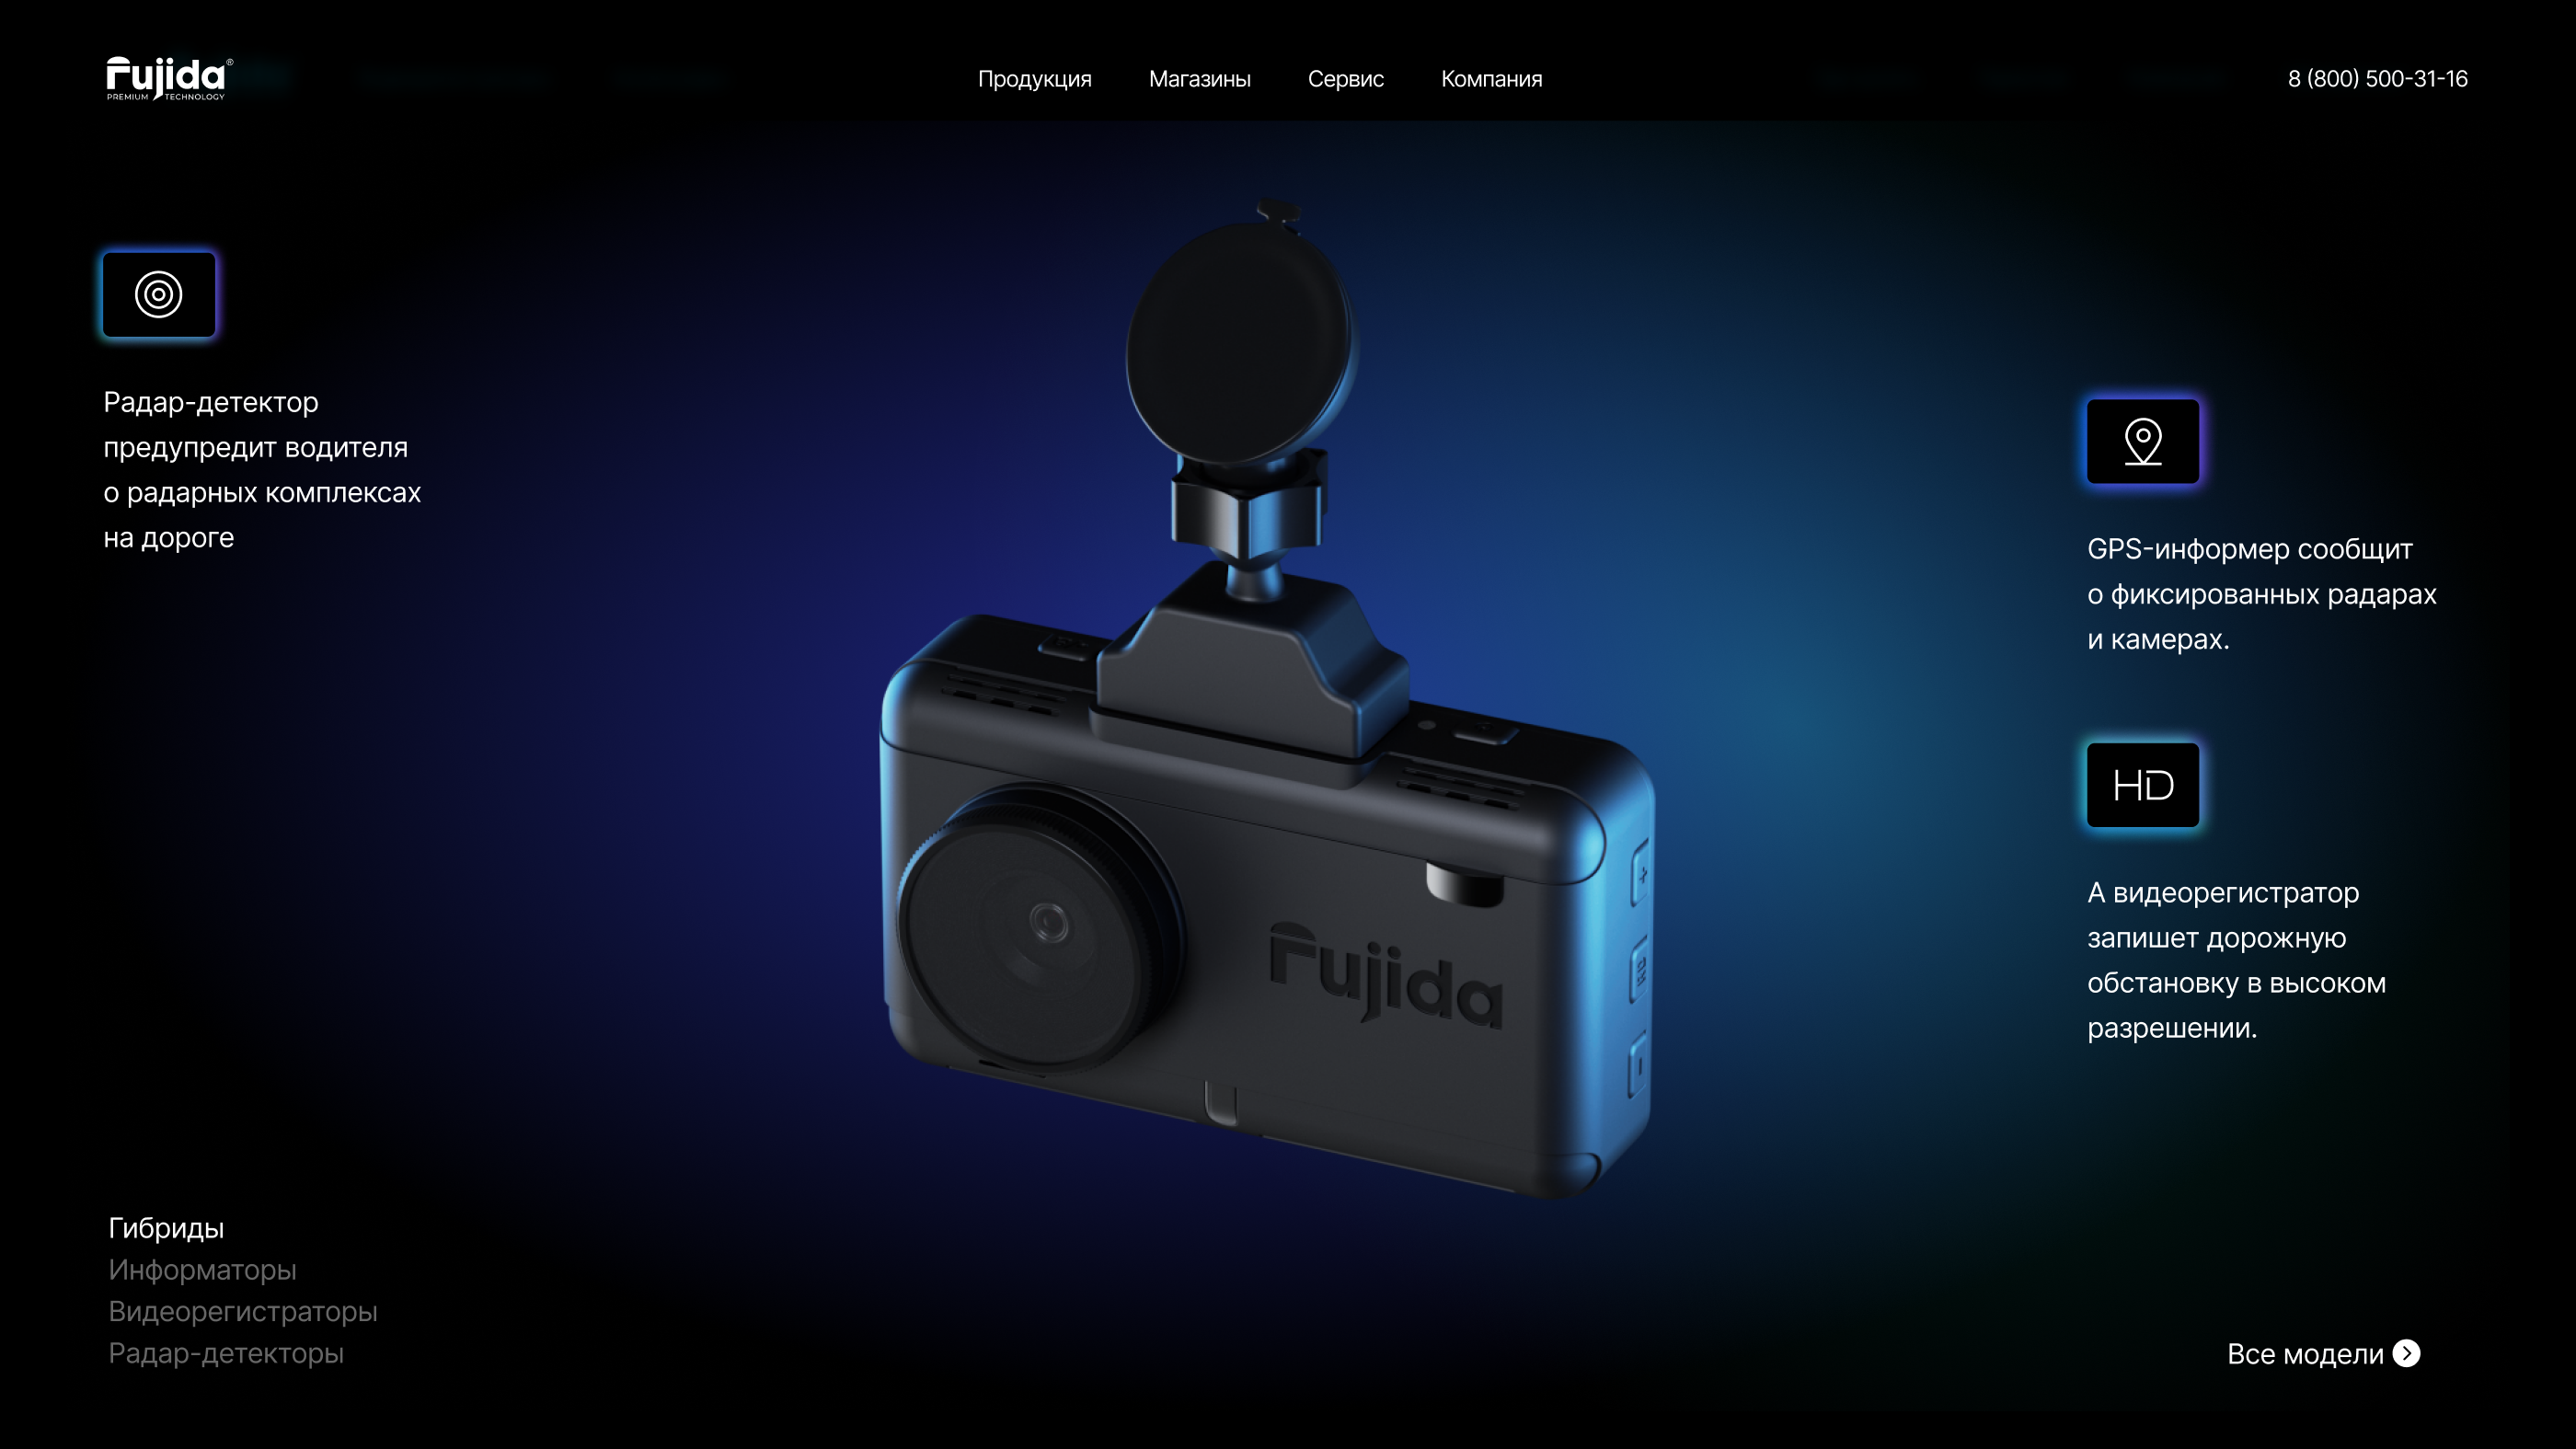 Fujida — информация о радар-детекторе